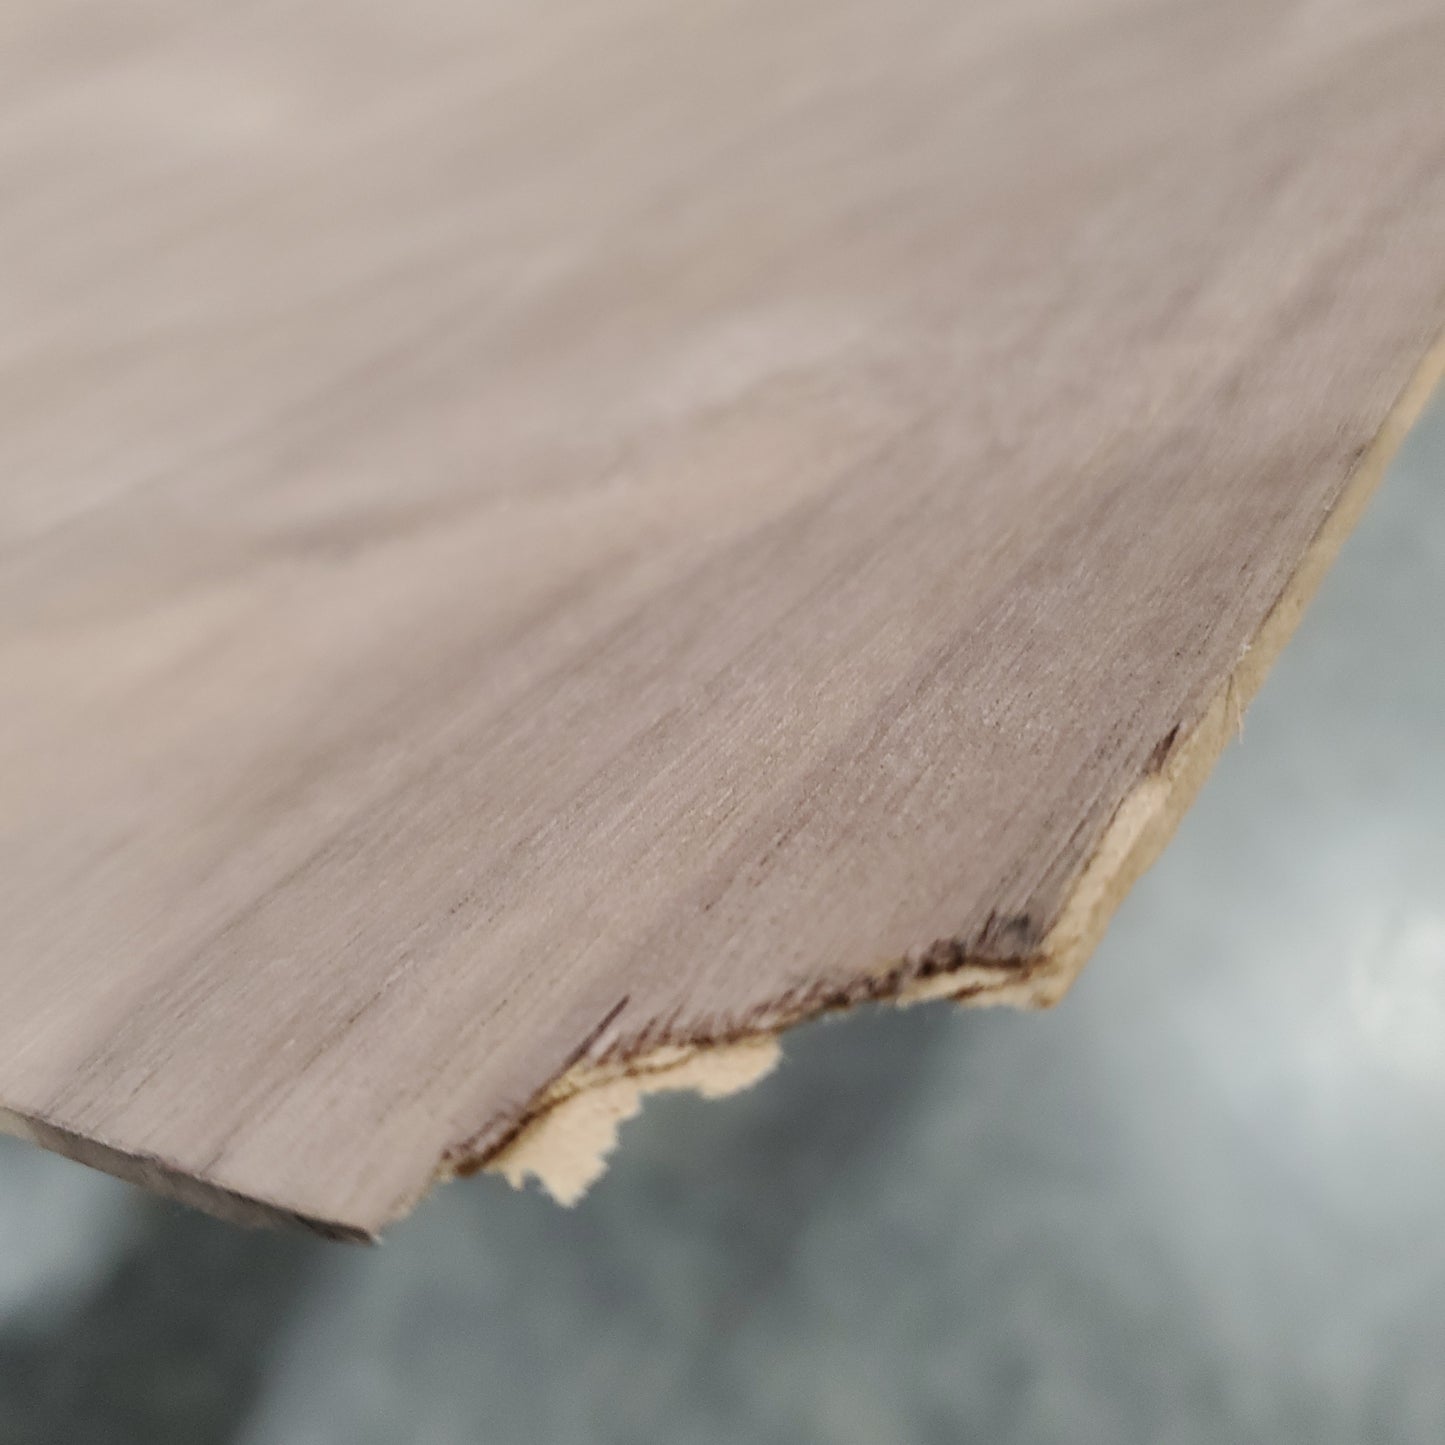 Z@ CrossGrain Sanded Walnut Wood Veneer Sheet 96.6” x 36.5” x 0.125” (AS-IS, Some Wear)